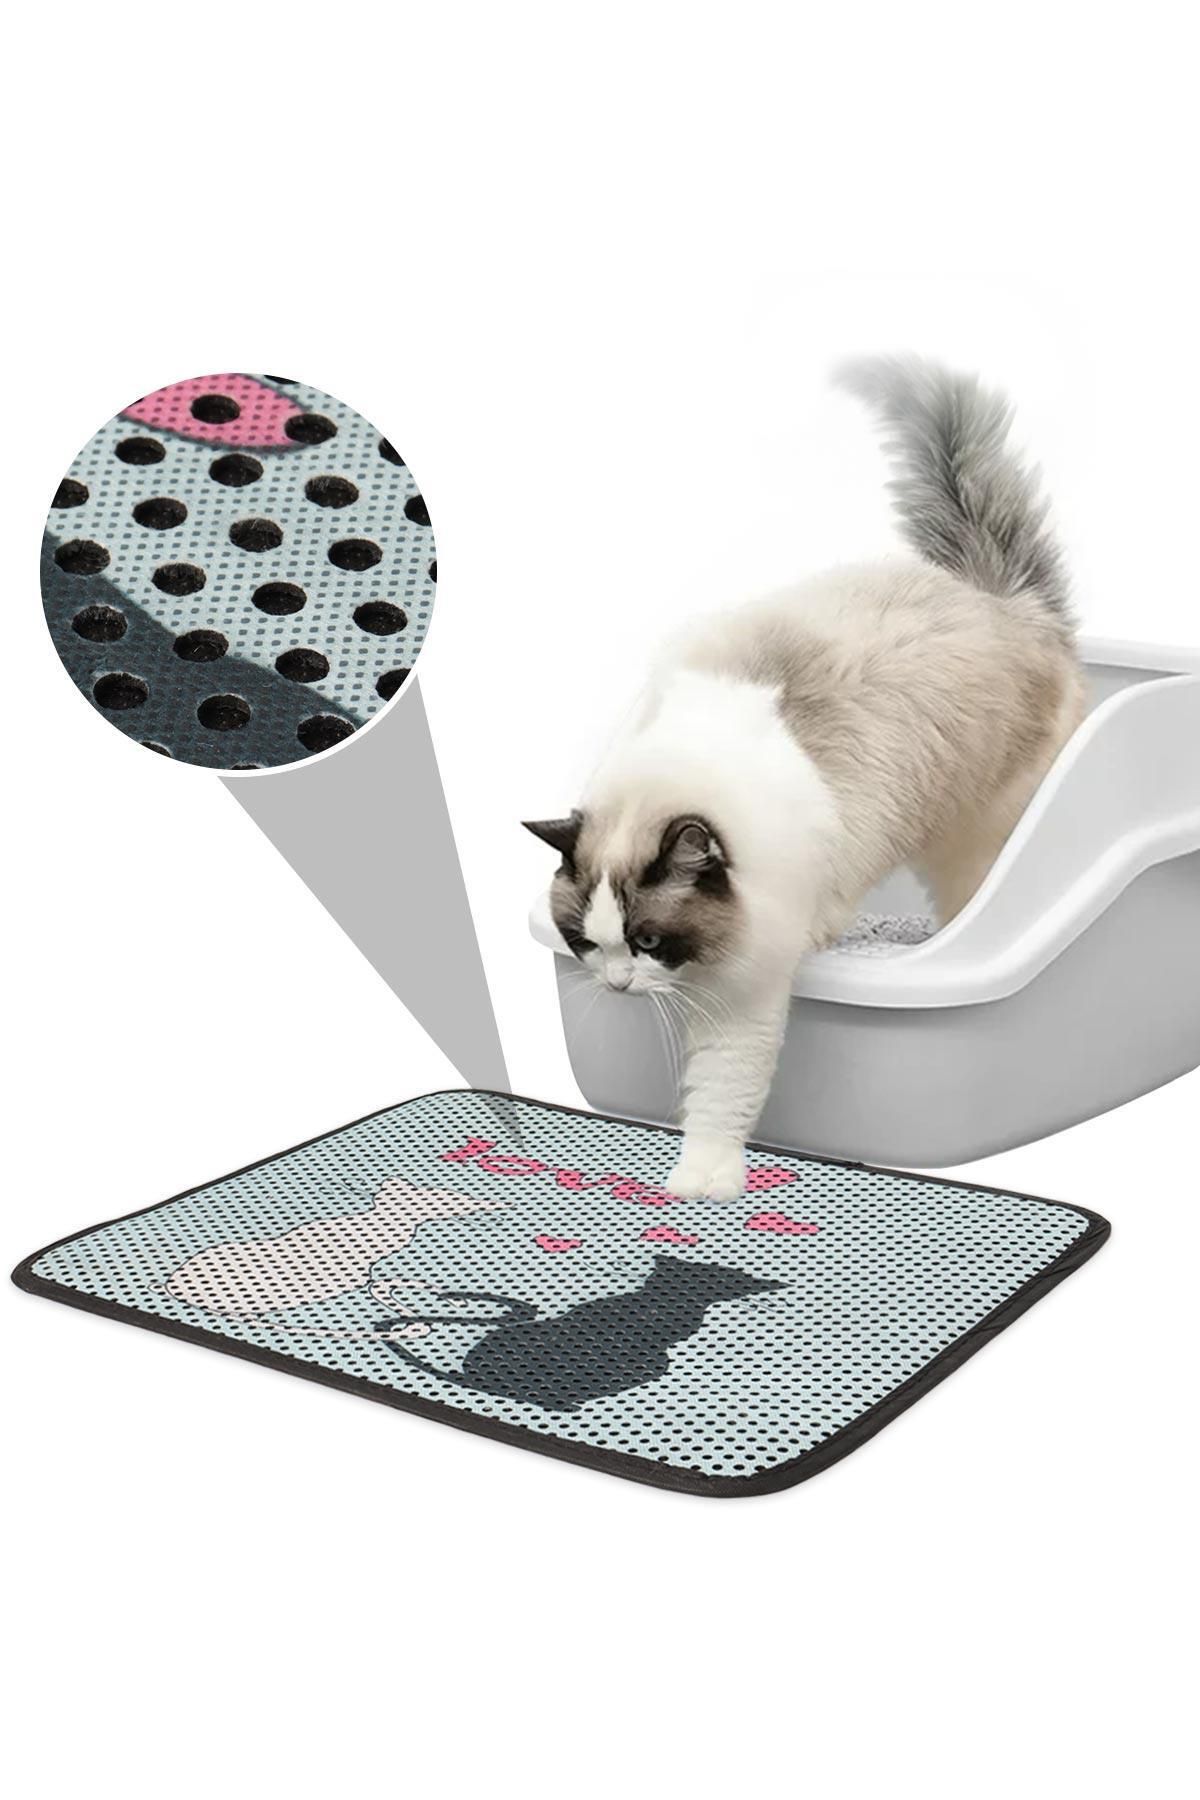 GOBYPET Renkli Desenli Elekli Kedi Tuvalet Önü Paspası, Kum Toplayıcı Kedi Halısı, Kedi Paspası Renkli Kedi